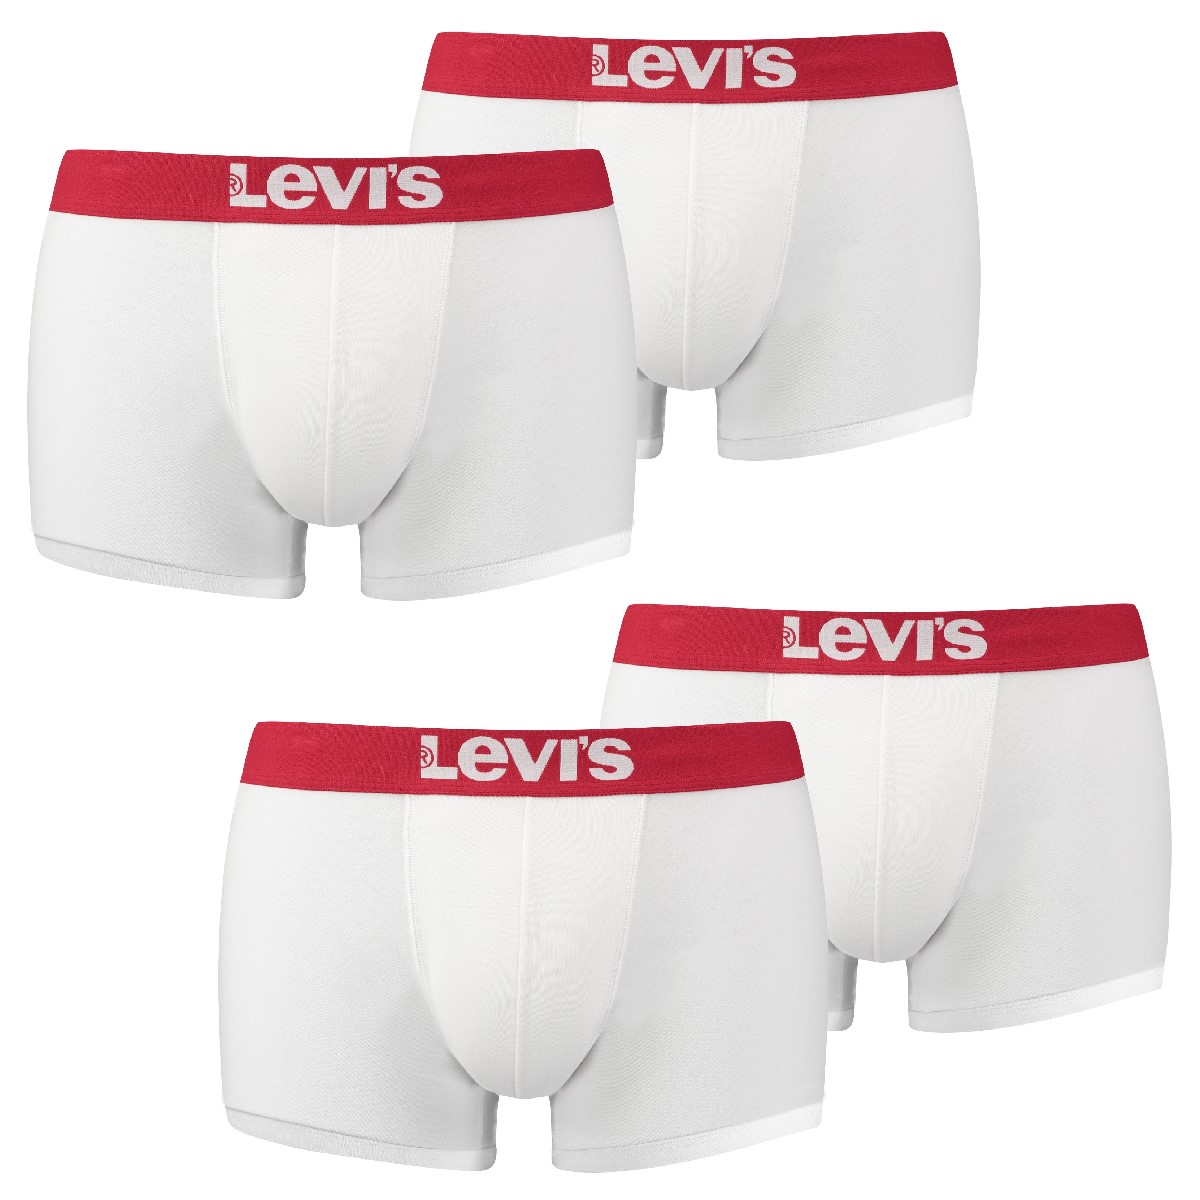 4 er Pack Levis Trunk Boxer Boxershorts 200SF Herren Unterhose Pant Unterwäsche, Bekleidungsgröße:XL, Farbe:317 - White/White